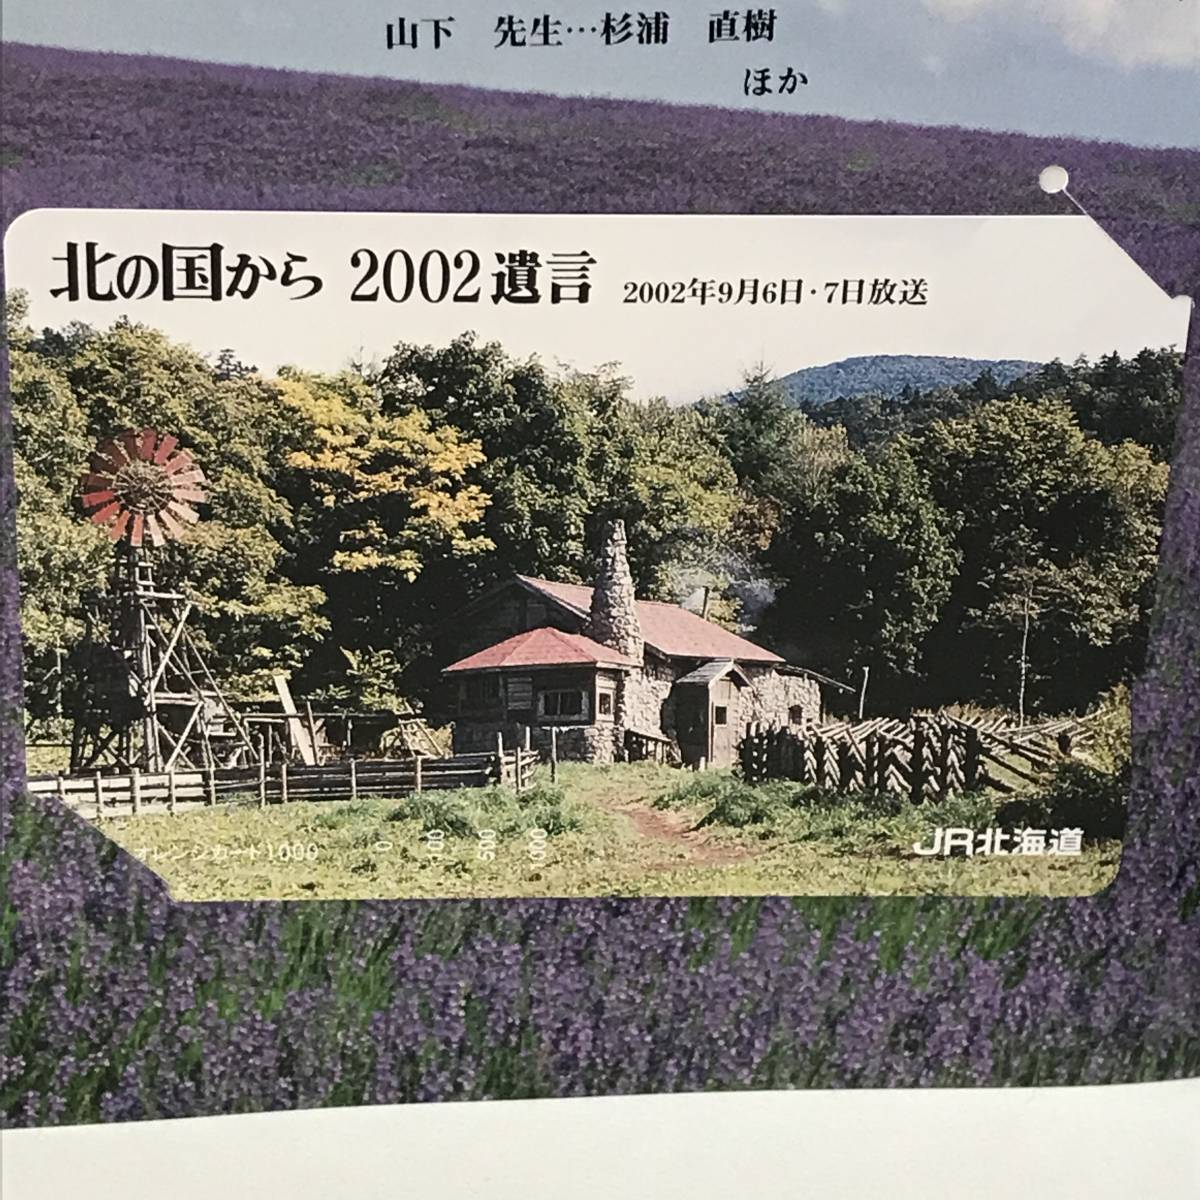 22K105-5 1 オレンジカード 北の国から 2002 遺言 JR北海道 _画像4